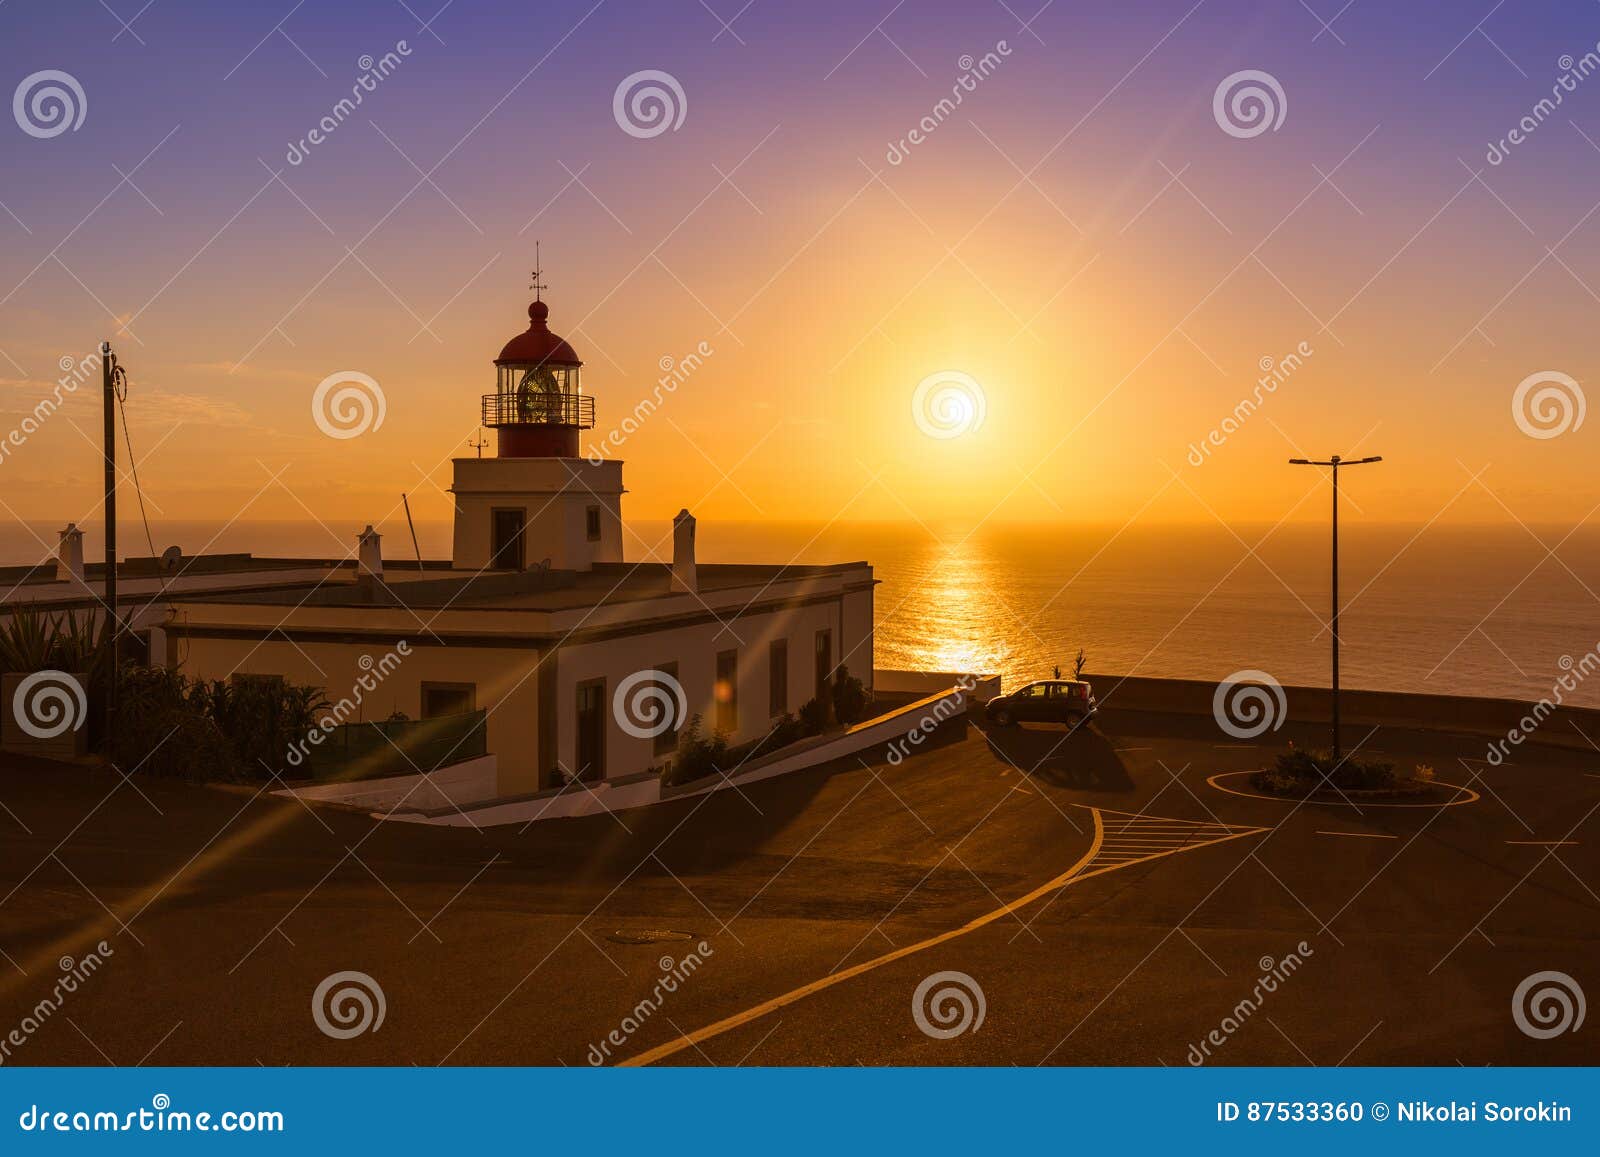 lighthouse ponta do pargo - madeira portugal